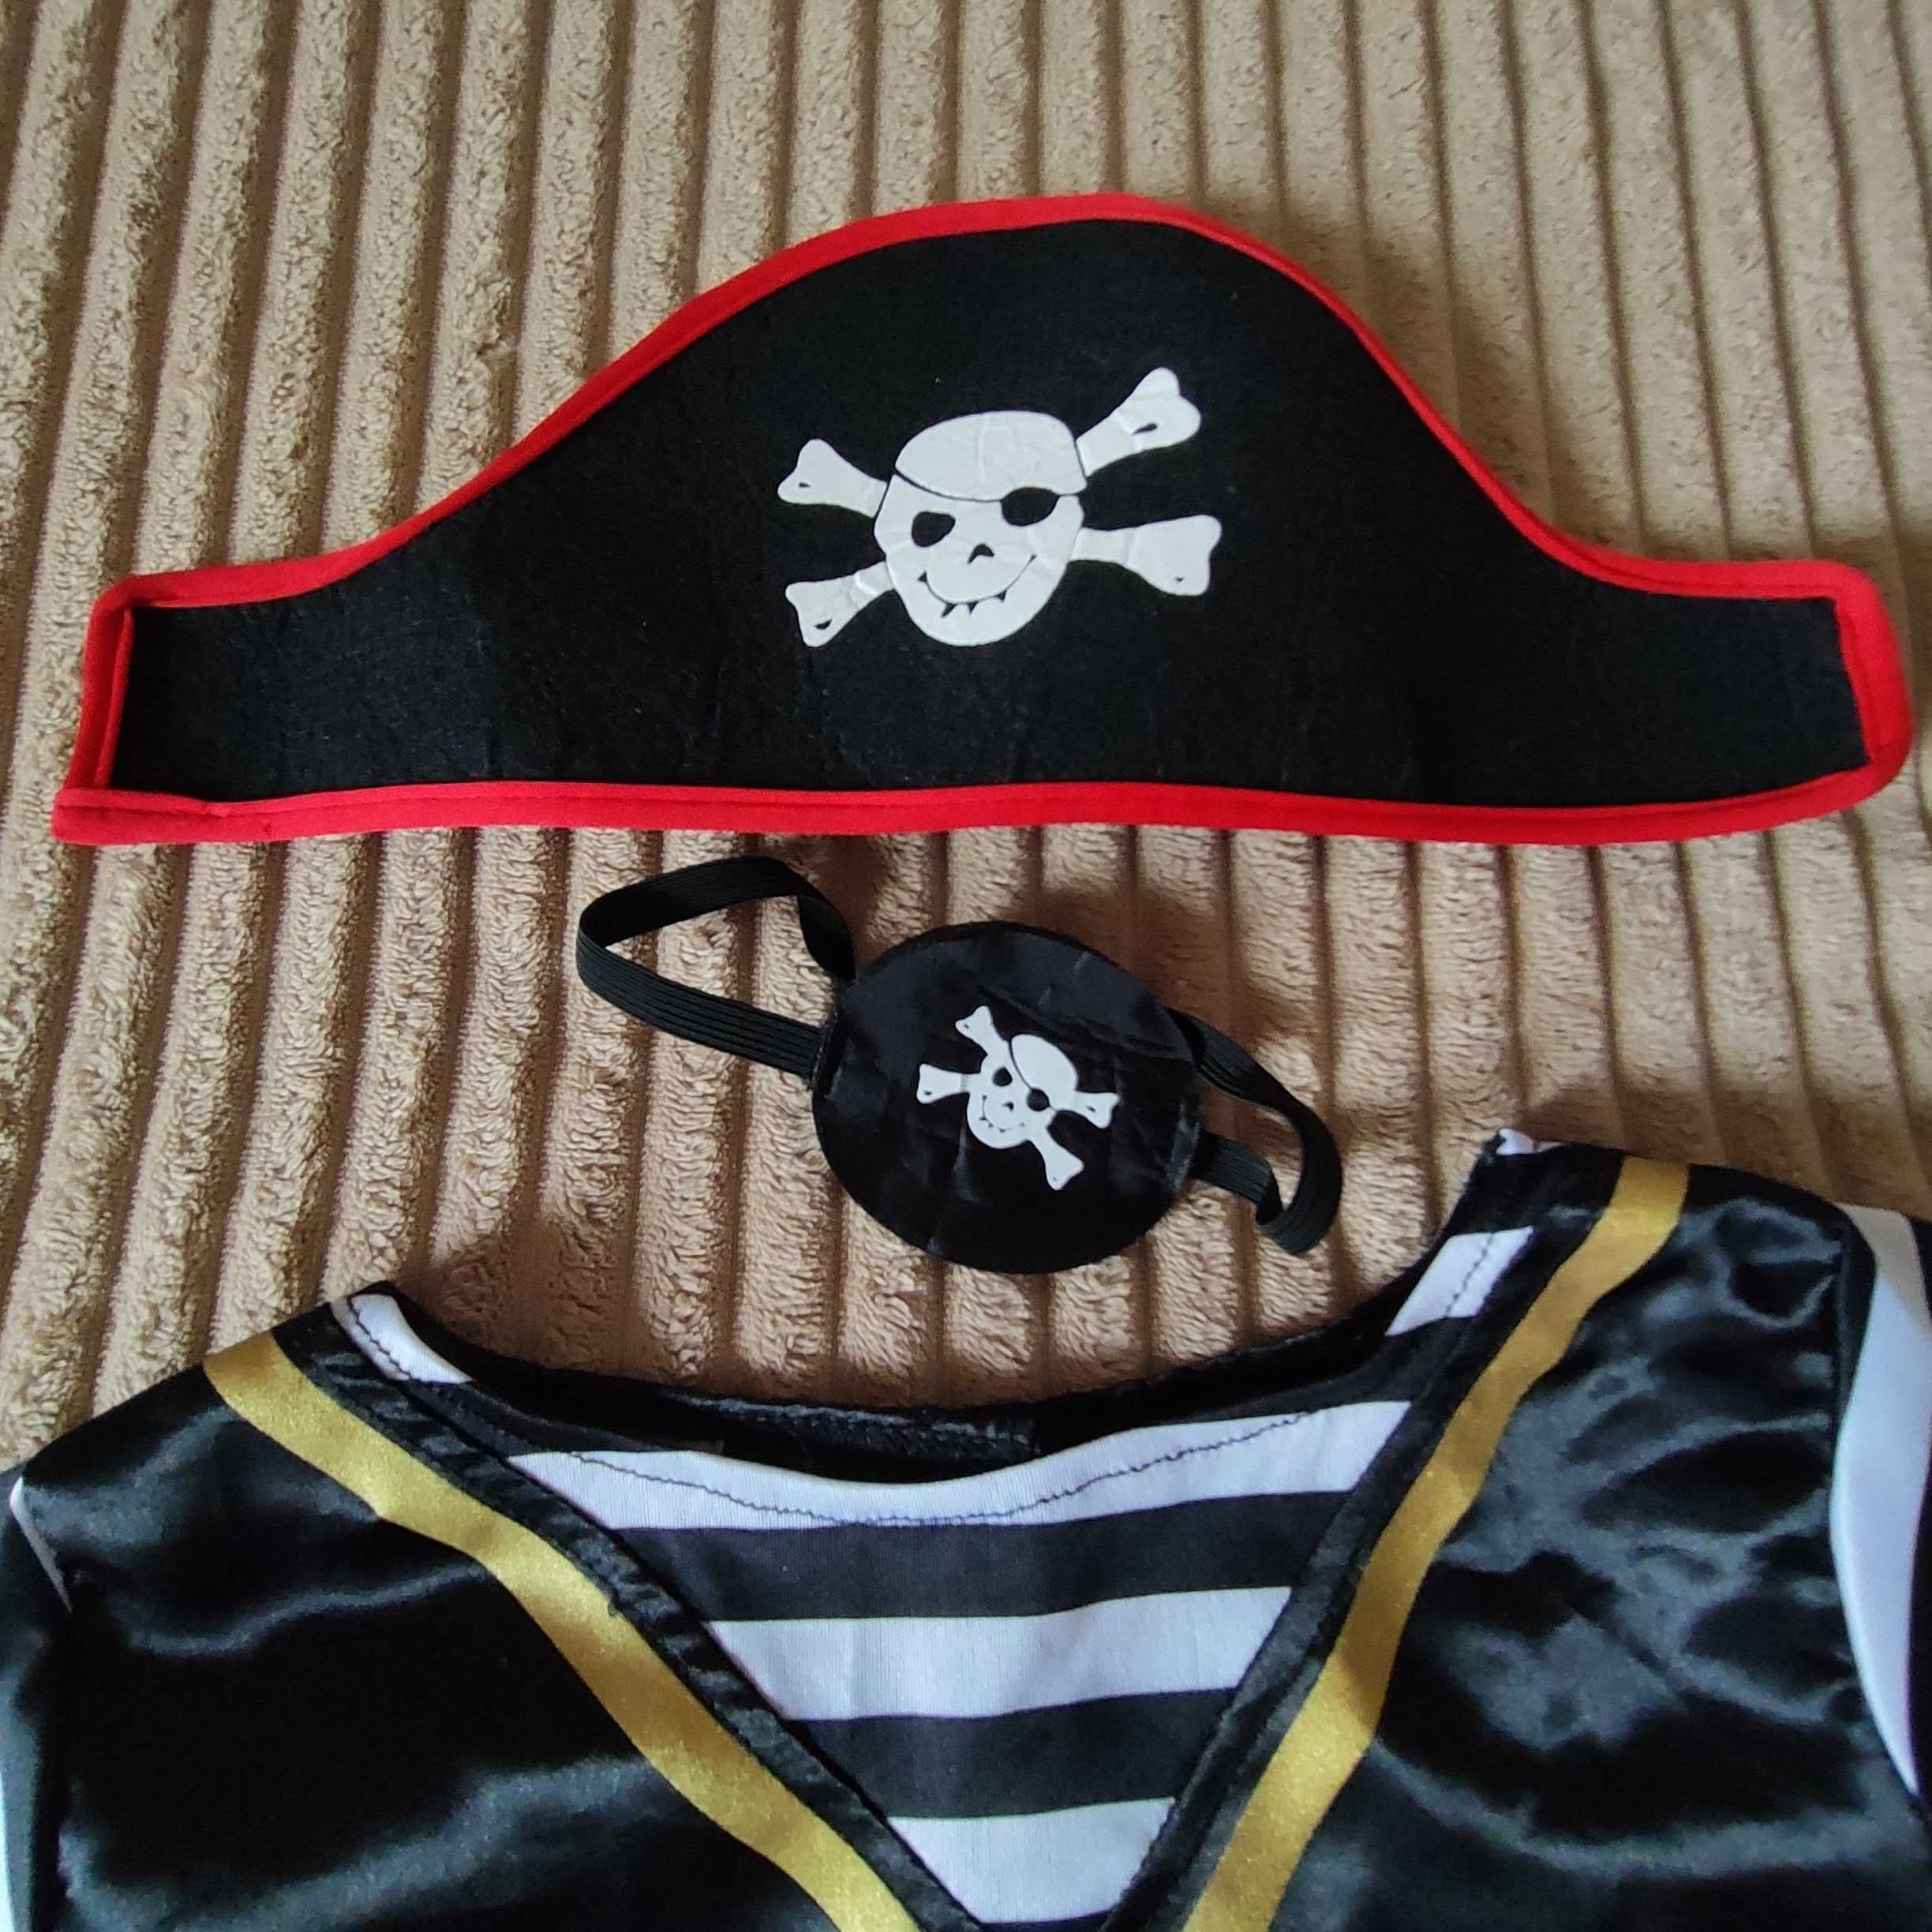 Костюм пірата,карнавальний костюм пірата 5-7 років